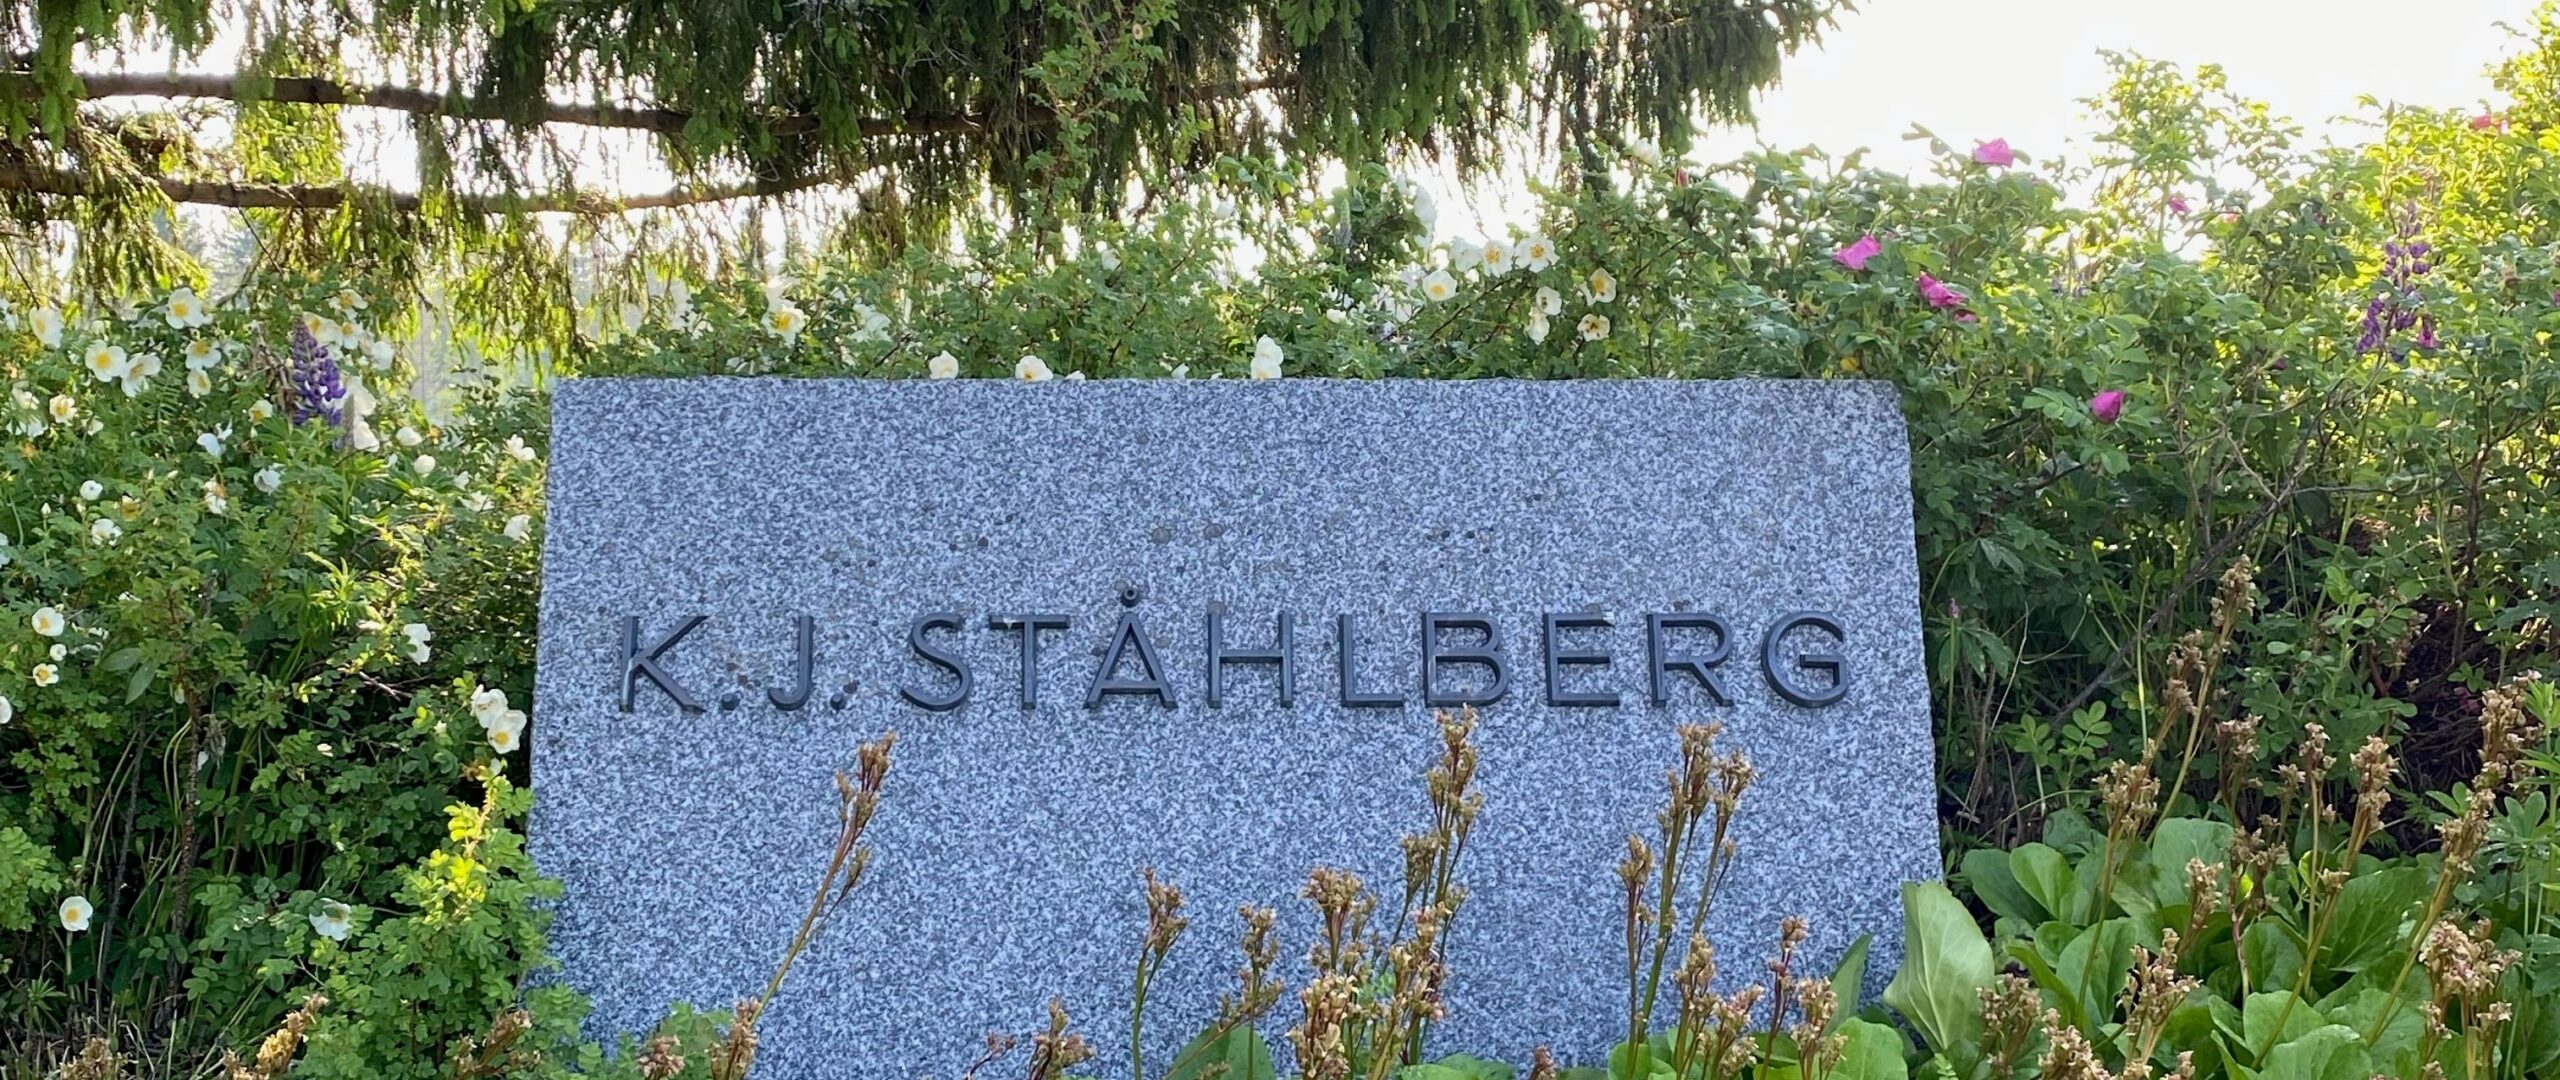 K. J. Ståhlbergin muistomerkki.